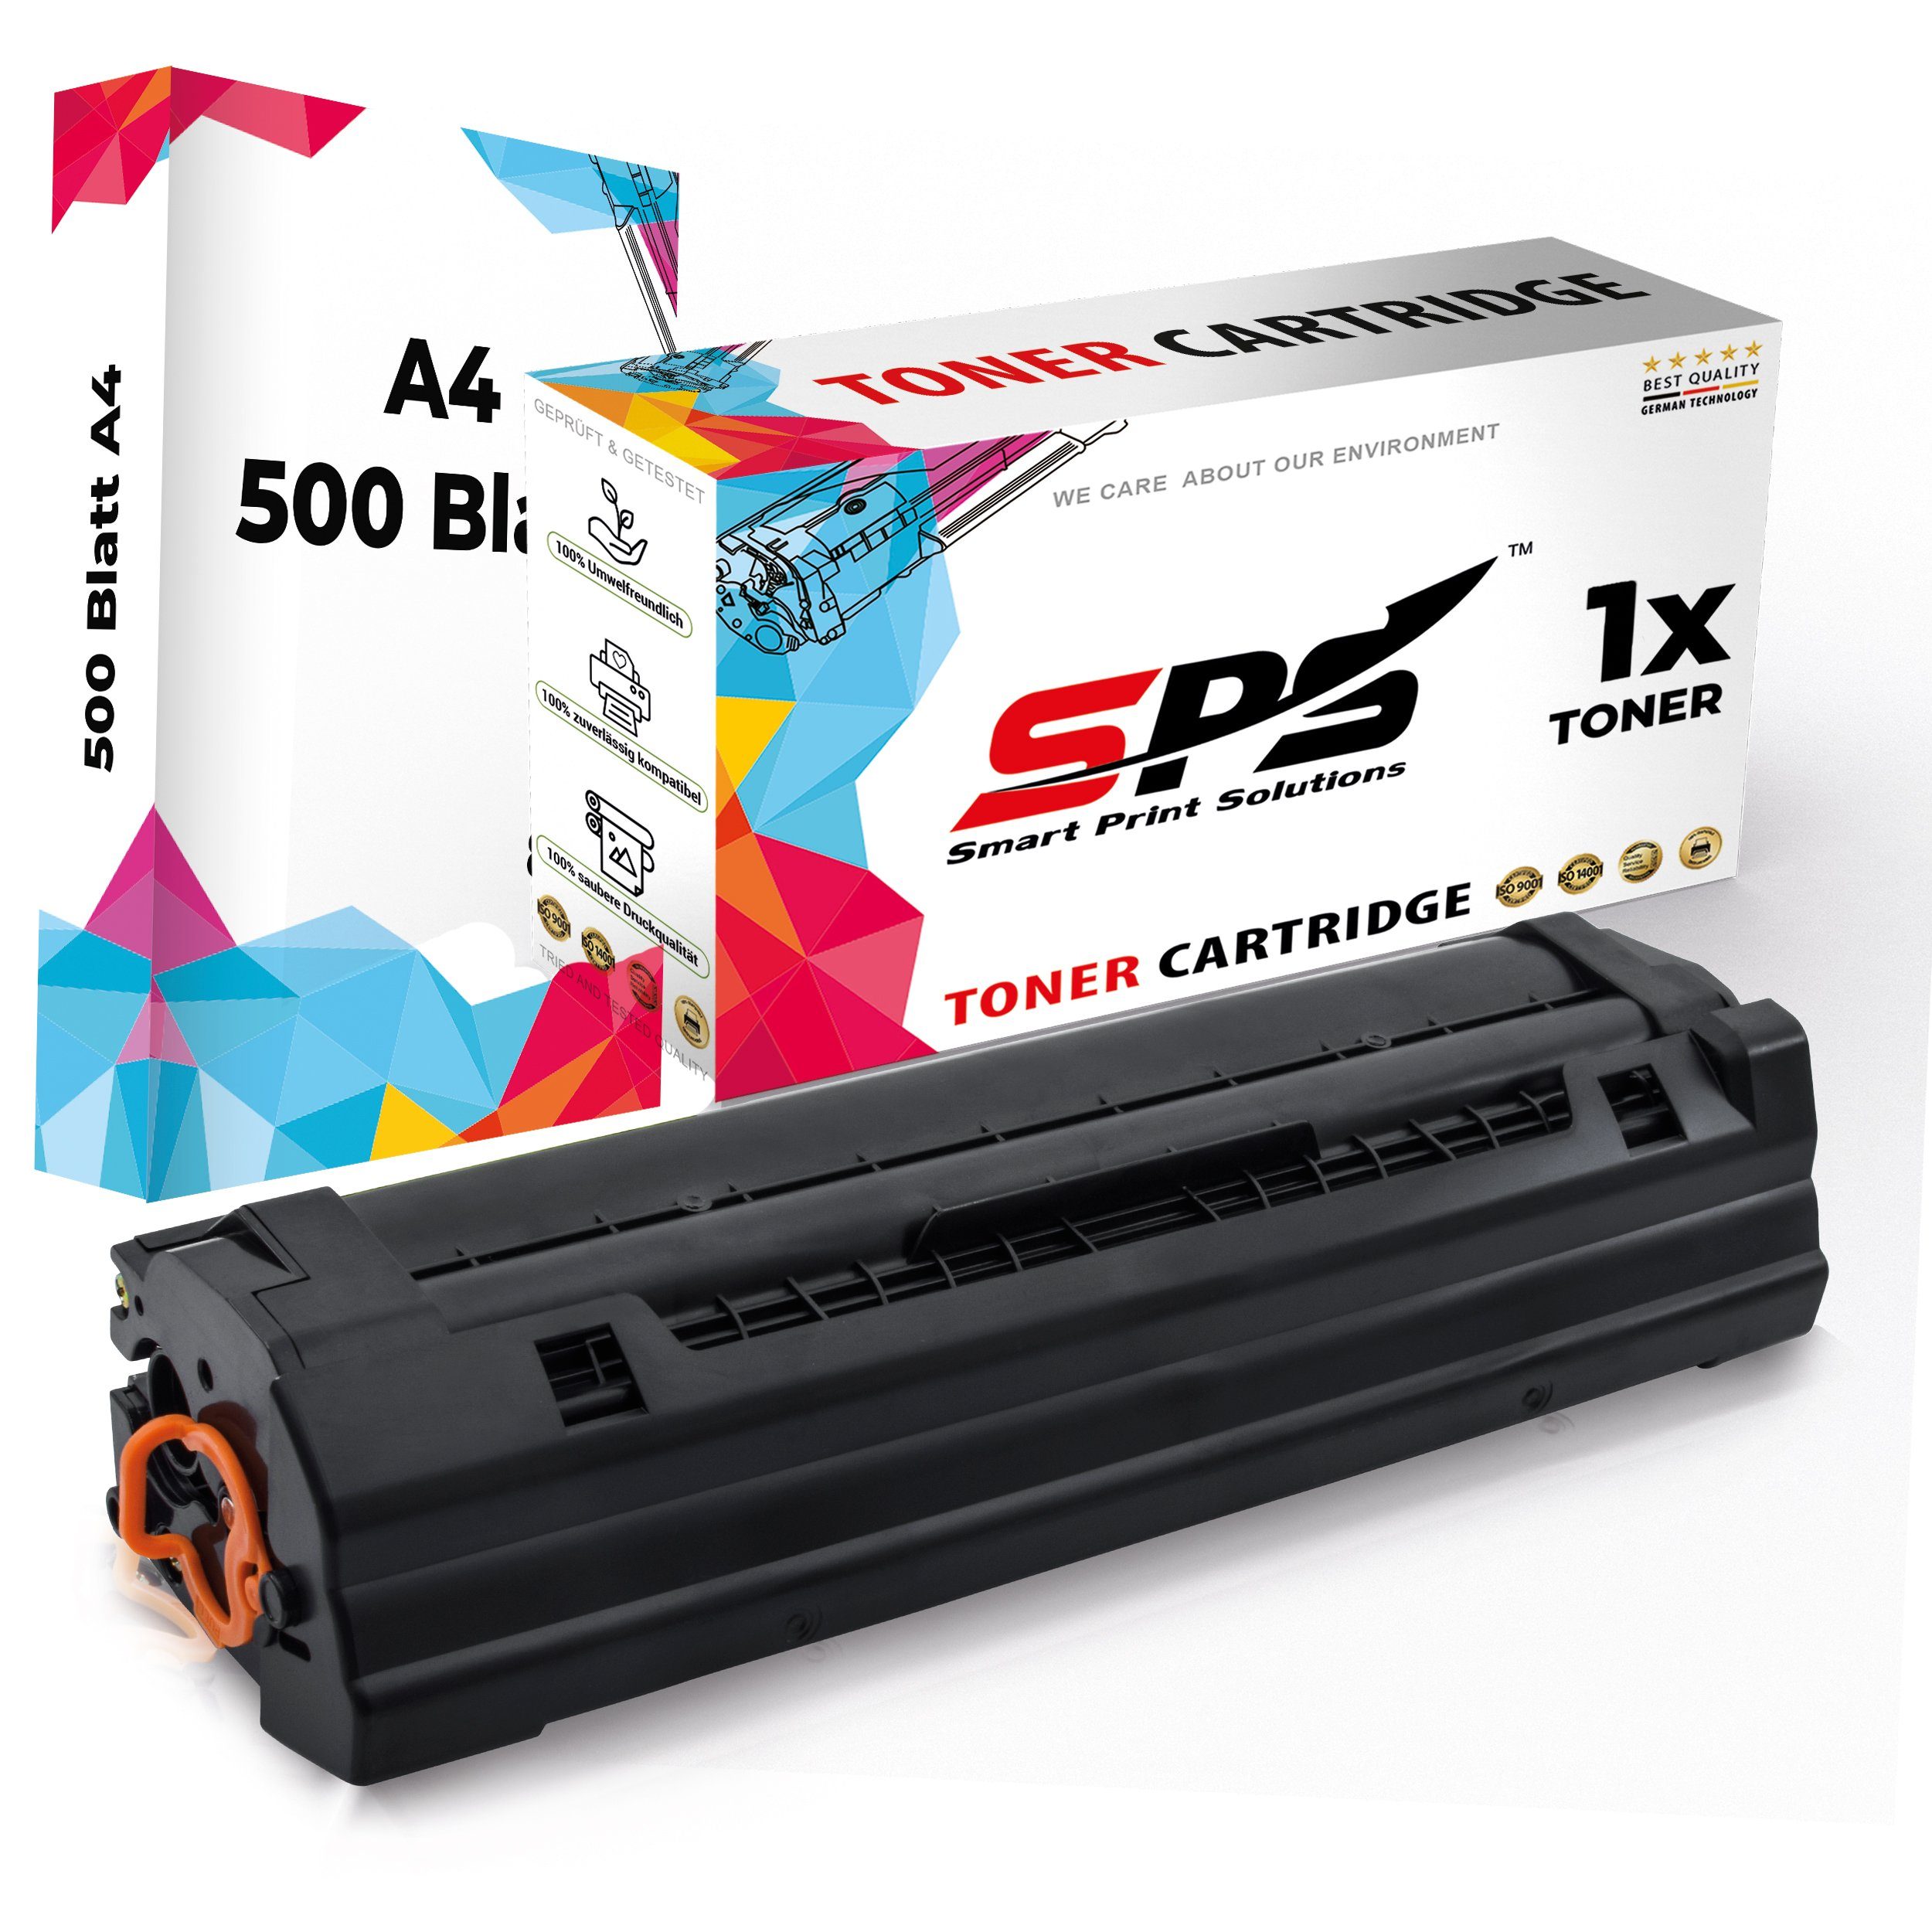 SPS Tonerkartusche Kompatibel für Samsung Xpress SL-M2070 111L MLT-D1, (1er Pack + A4 Papier, 1x Schwarz Toner)